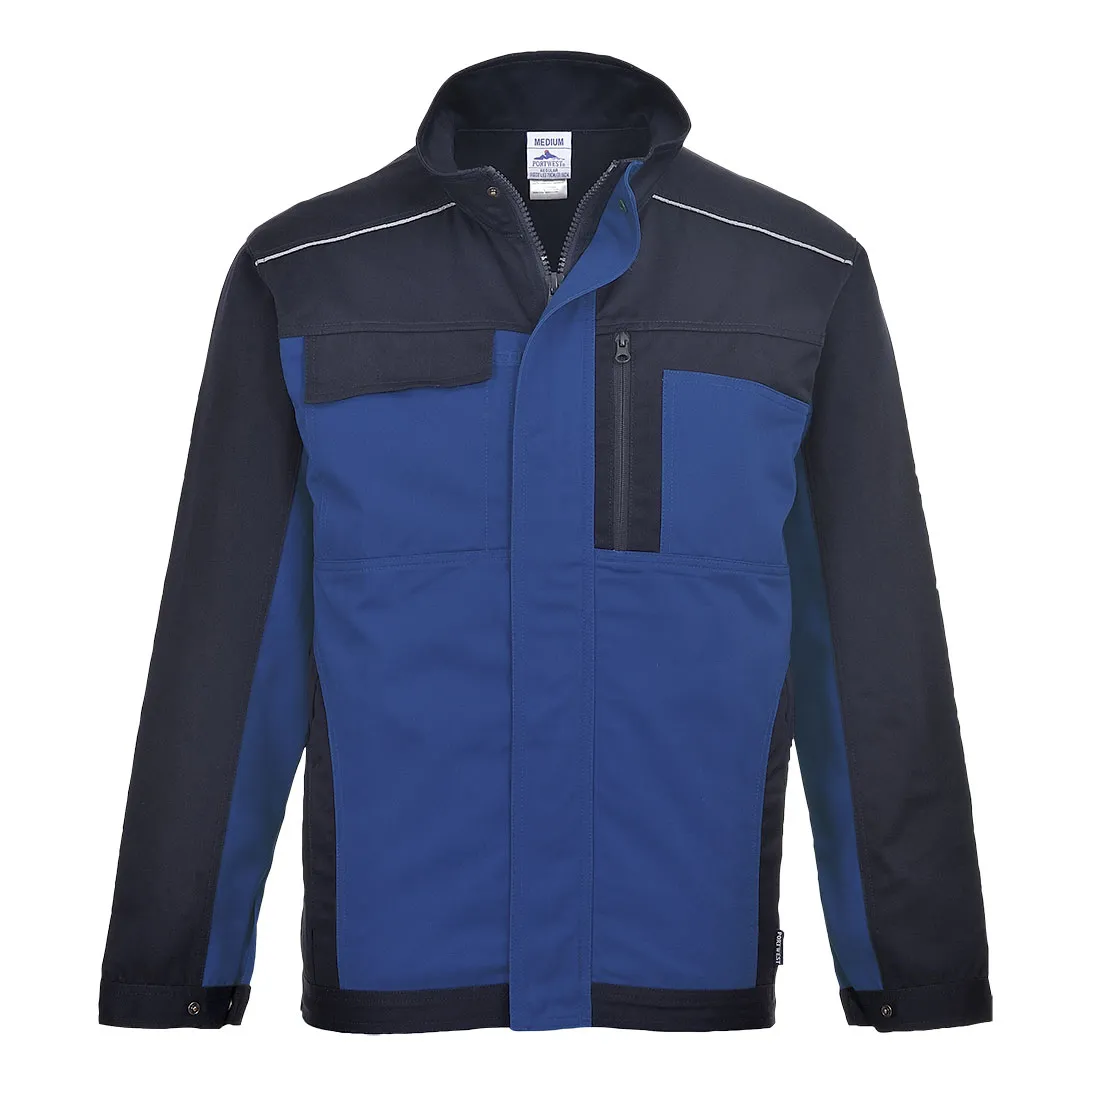 Рабочая куртка Portwest t703, серый (XL). Portwest contrast Jacket tx10 back. Утепленная куртка Portwest синий s562. Куртка Portwest tx10, чёрный / серый.